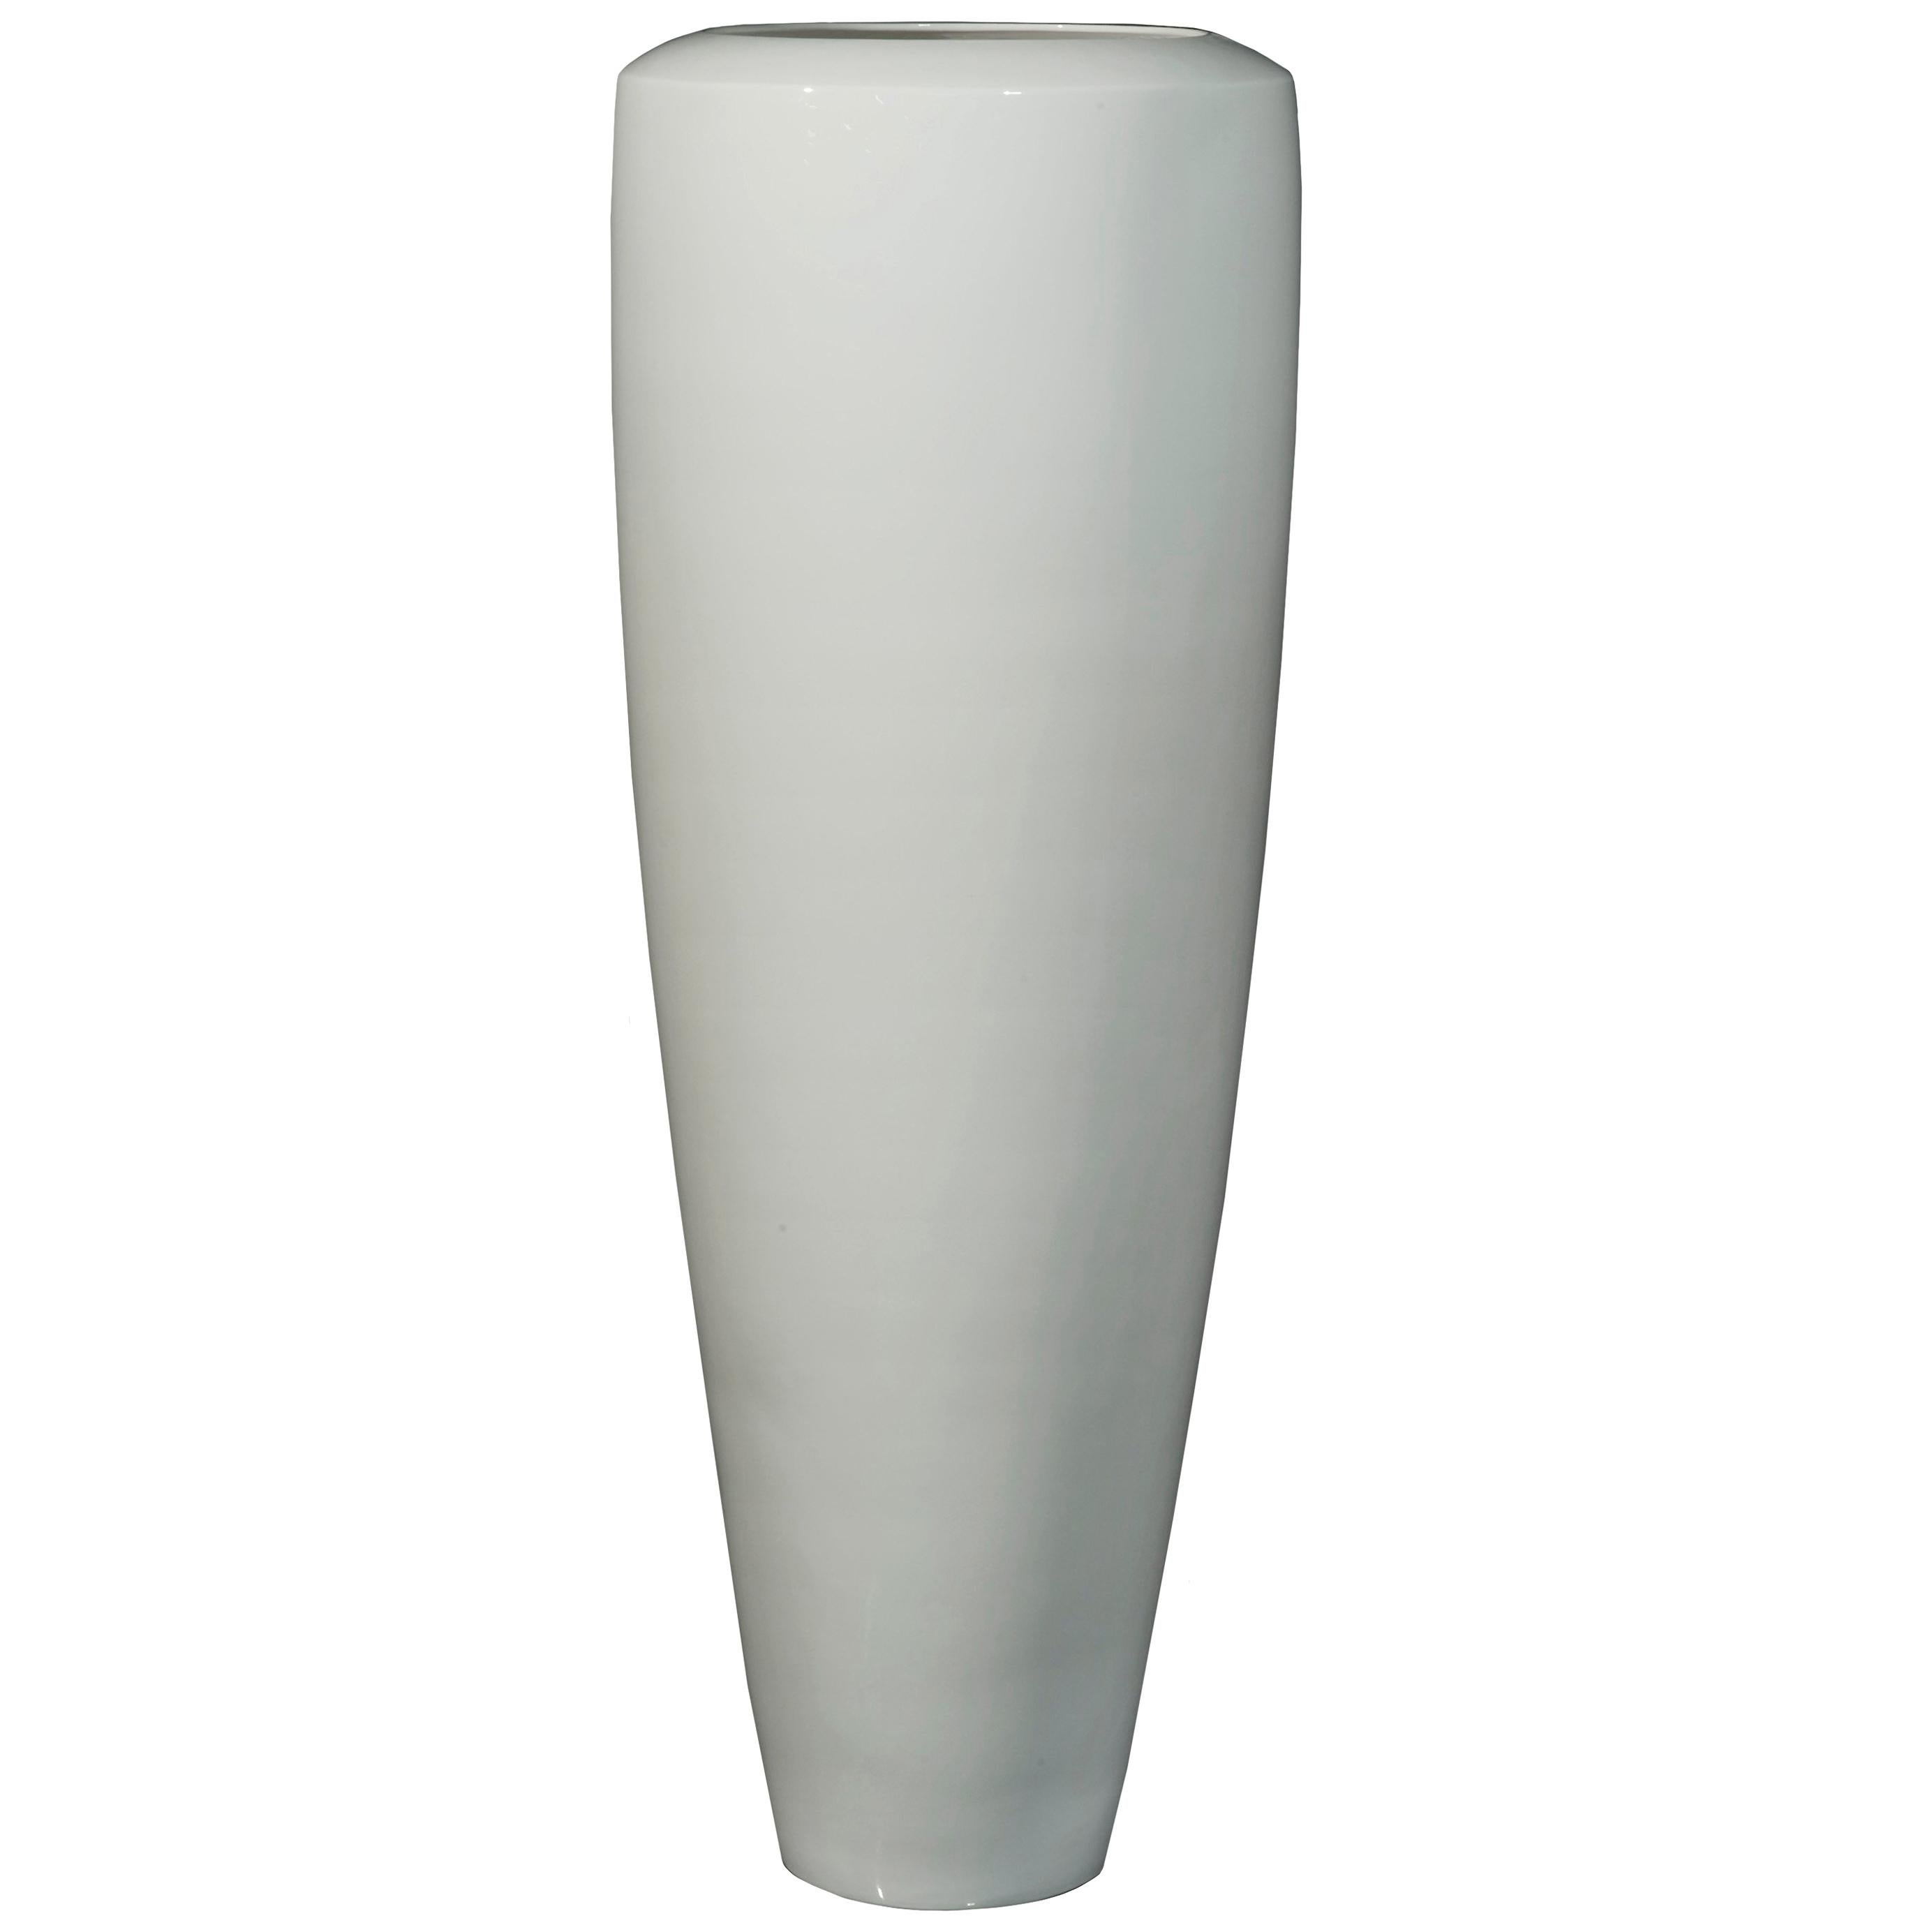 Vase Obice Big in Ceramic, Shiny White, Italy